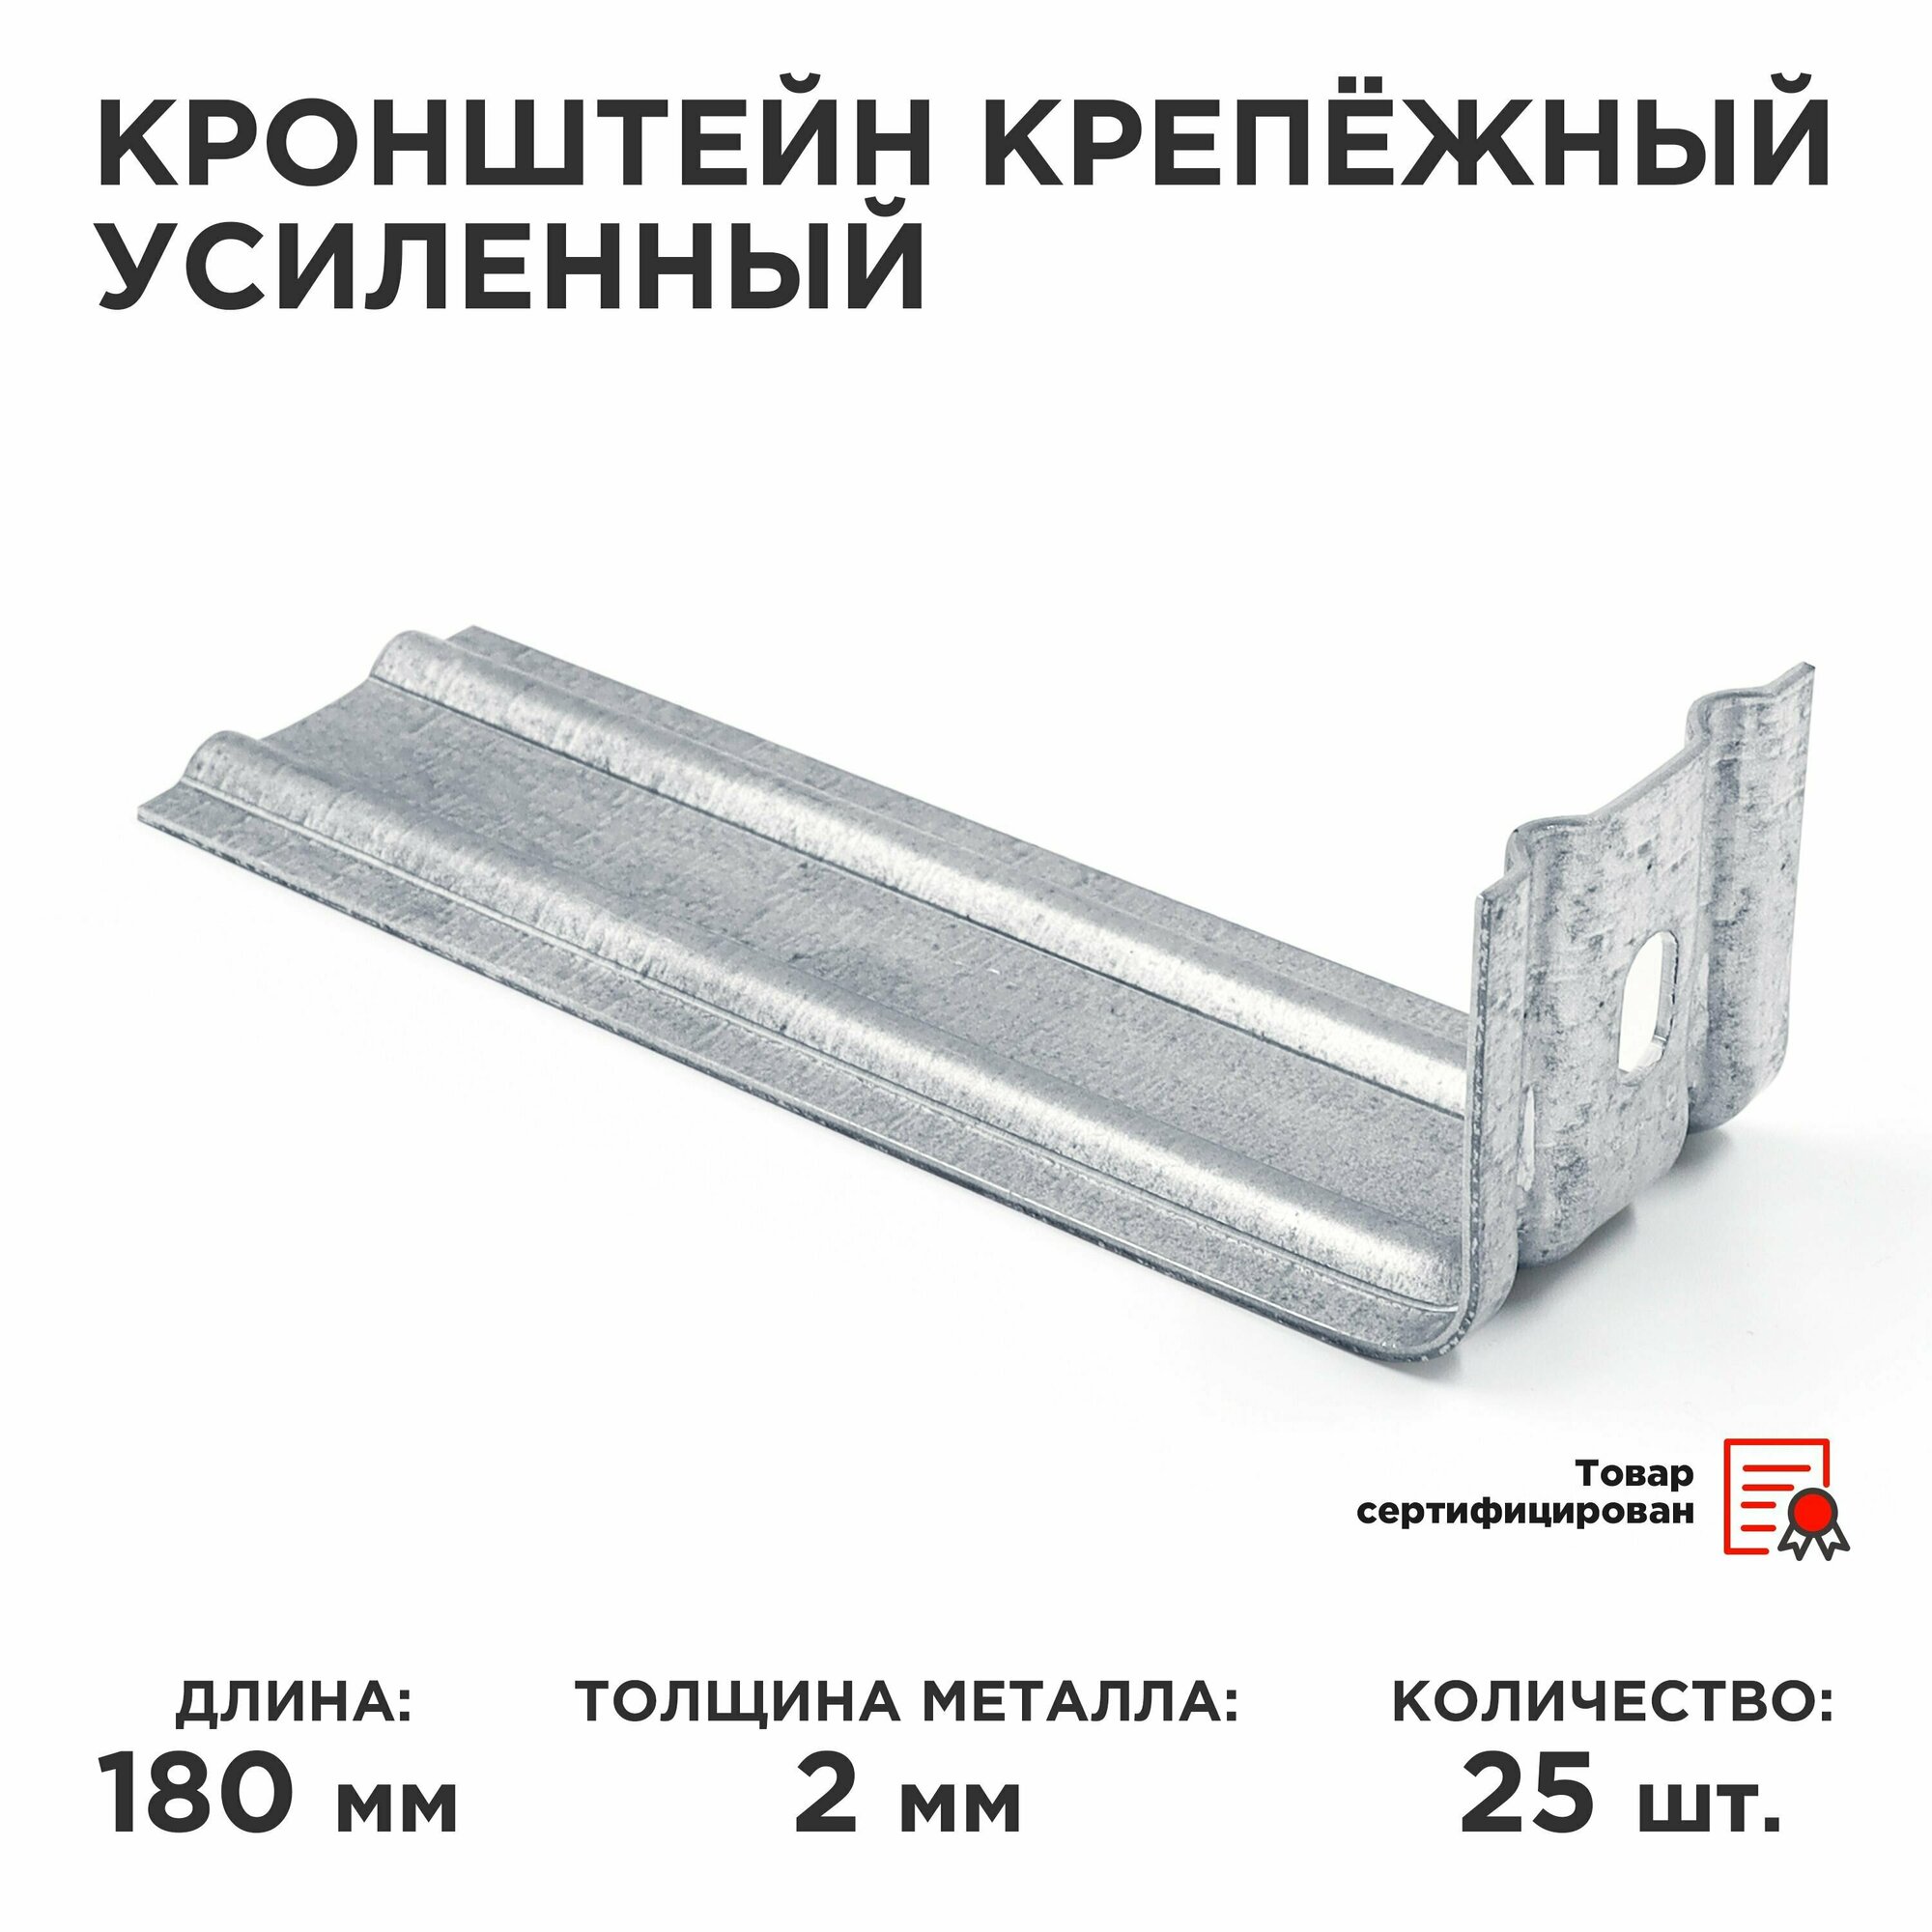 Кронштейн крепежный усиленный ККУ, 50 х 18 см, толщина 2 мм, 25 штук в упаковке